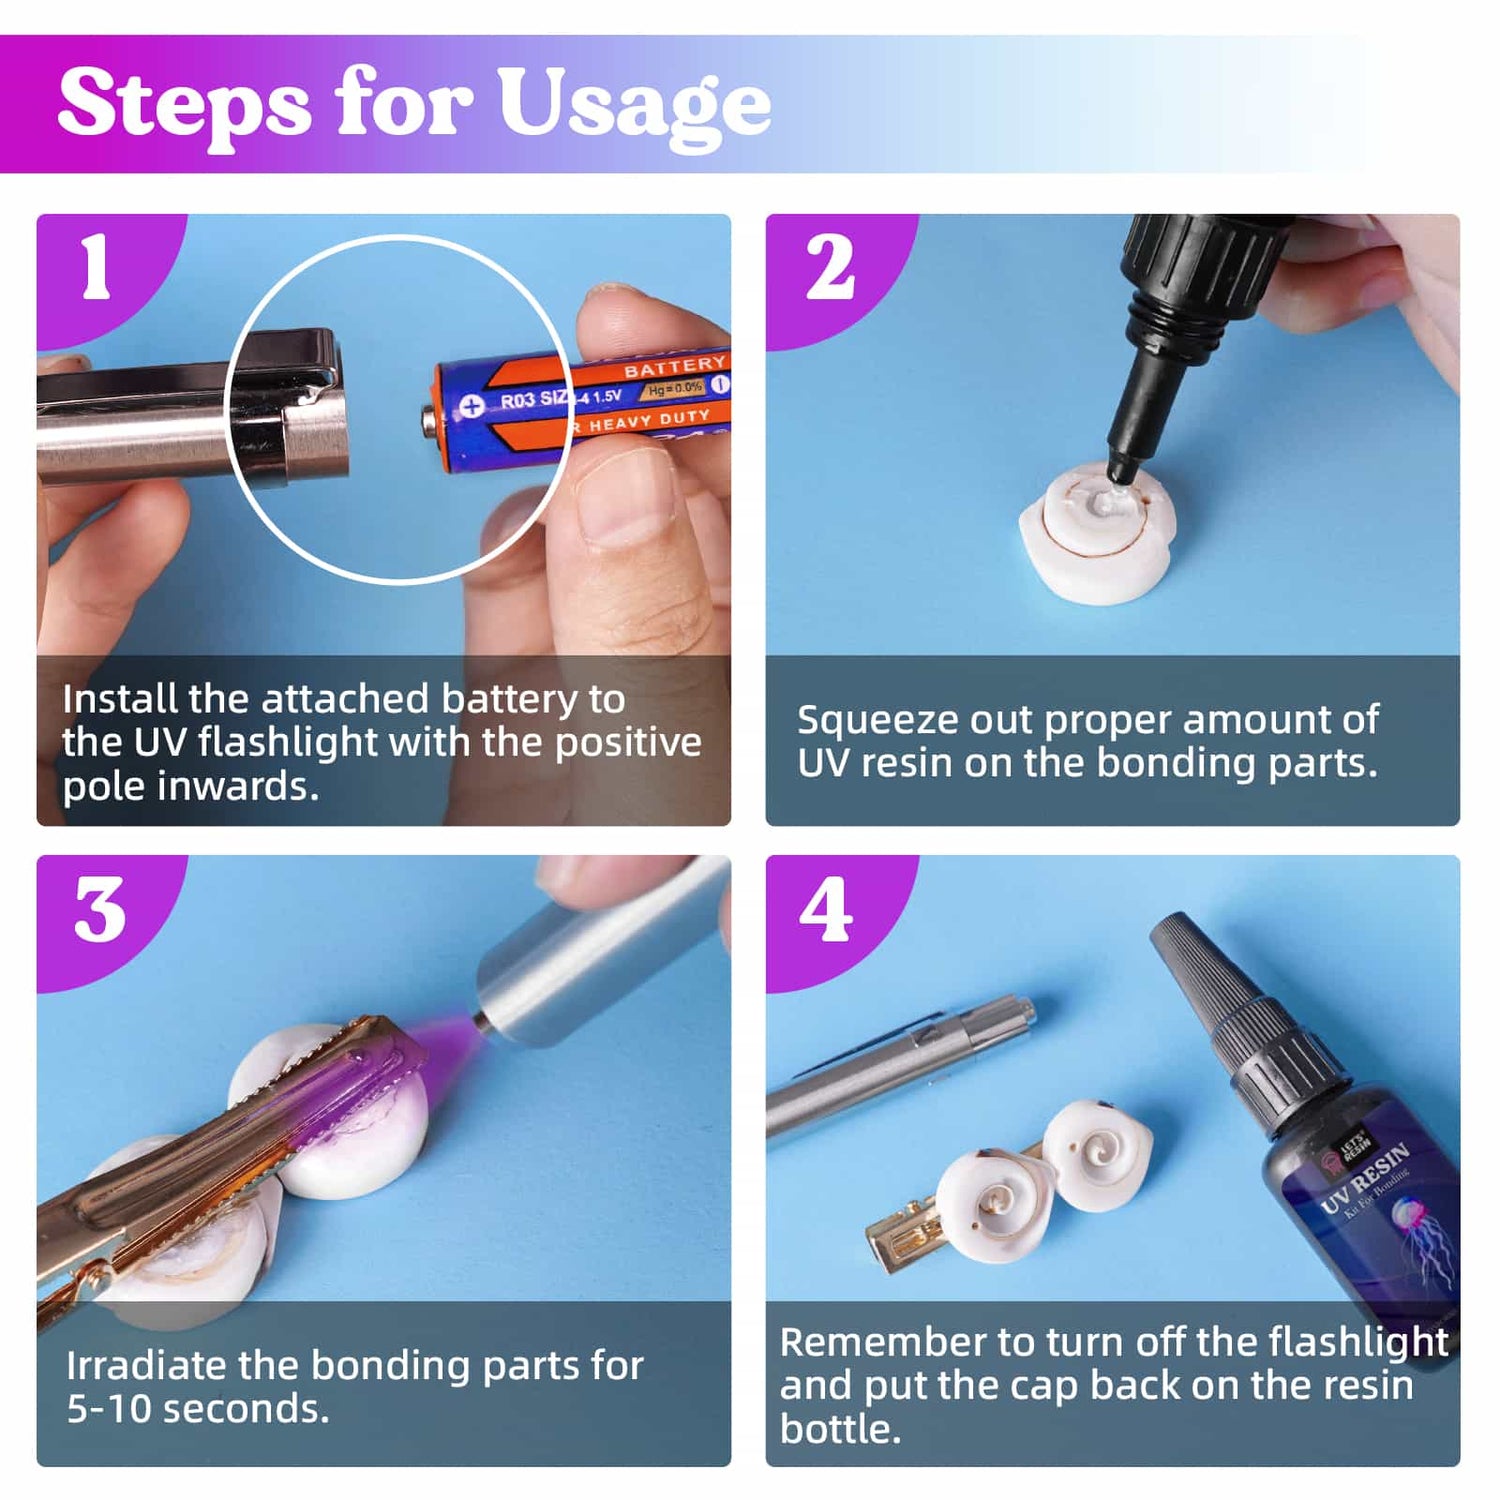 Lightwish UV Resin Kit Beginners Guide Tips & Tricks 